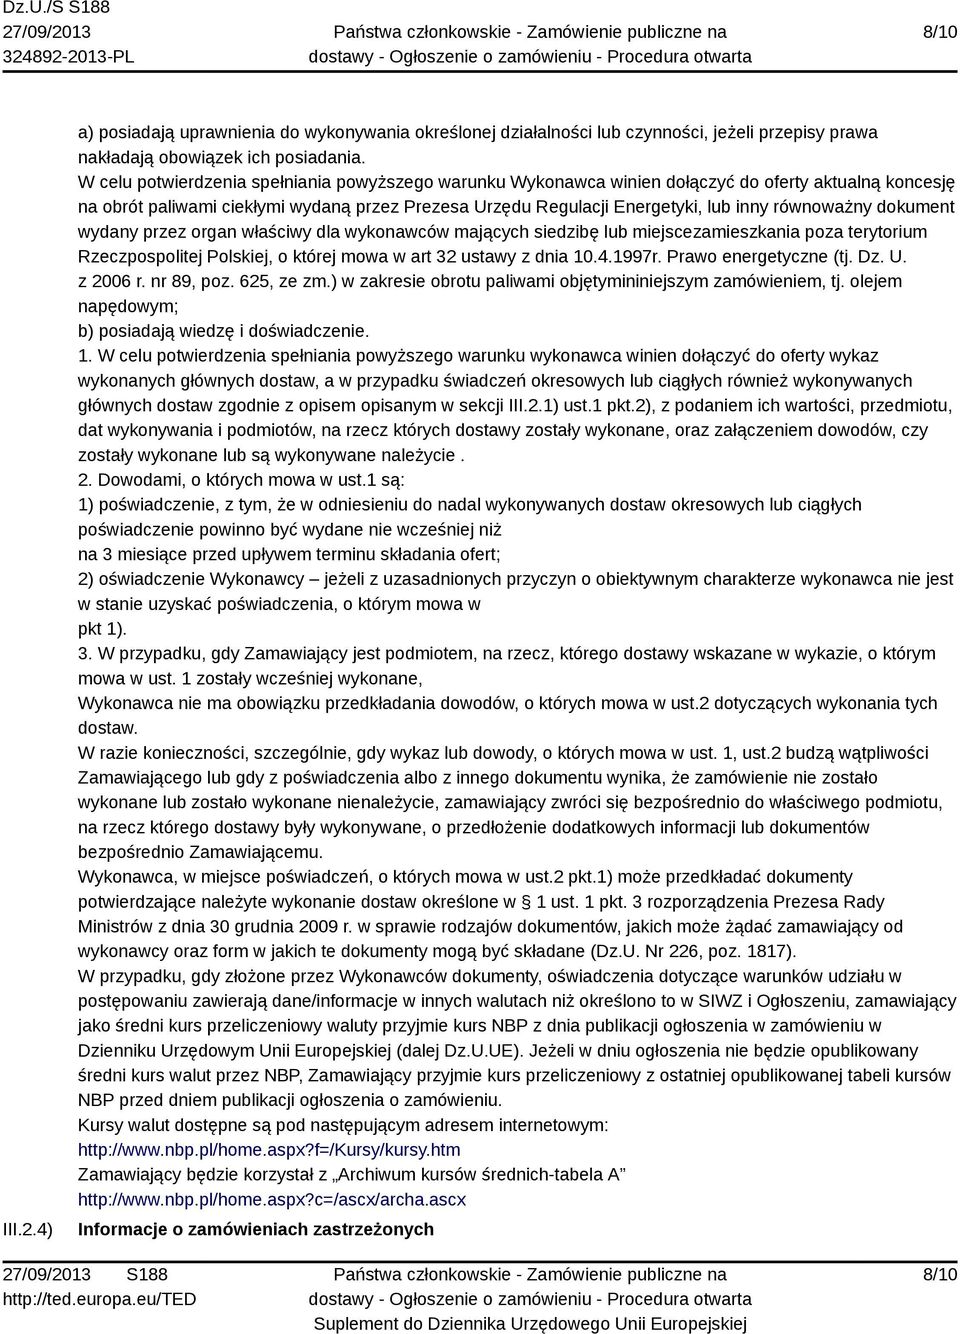 równoważny dokument wydany przez organ właściwy dla wykonawców mających siedzibę lub miejscezamieszkania poza terytorium Rzeczpospolitej Polskiej, o której mowa w art 32 ustawy z dnia 10.4.1997r.